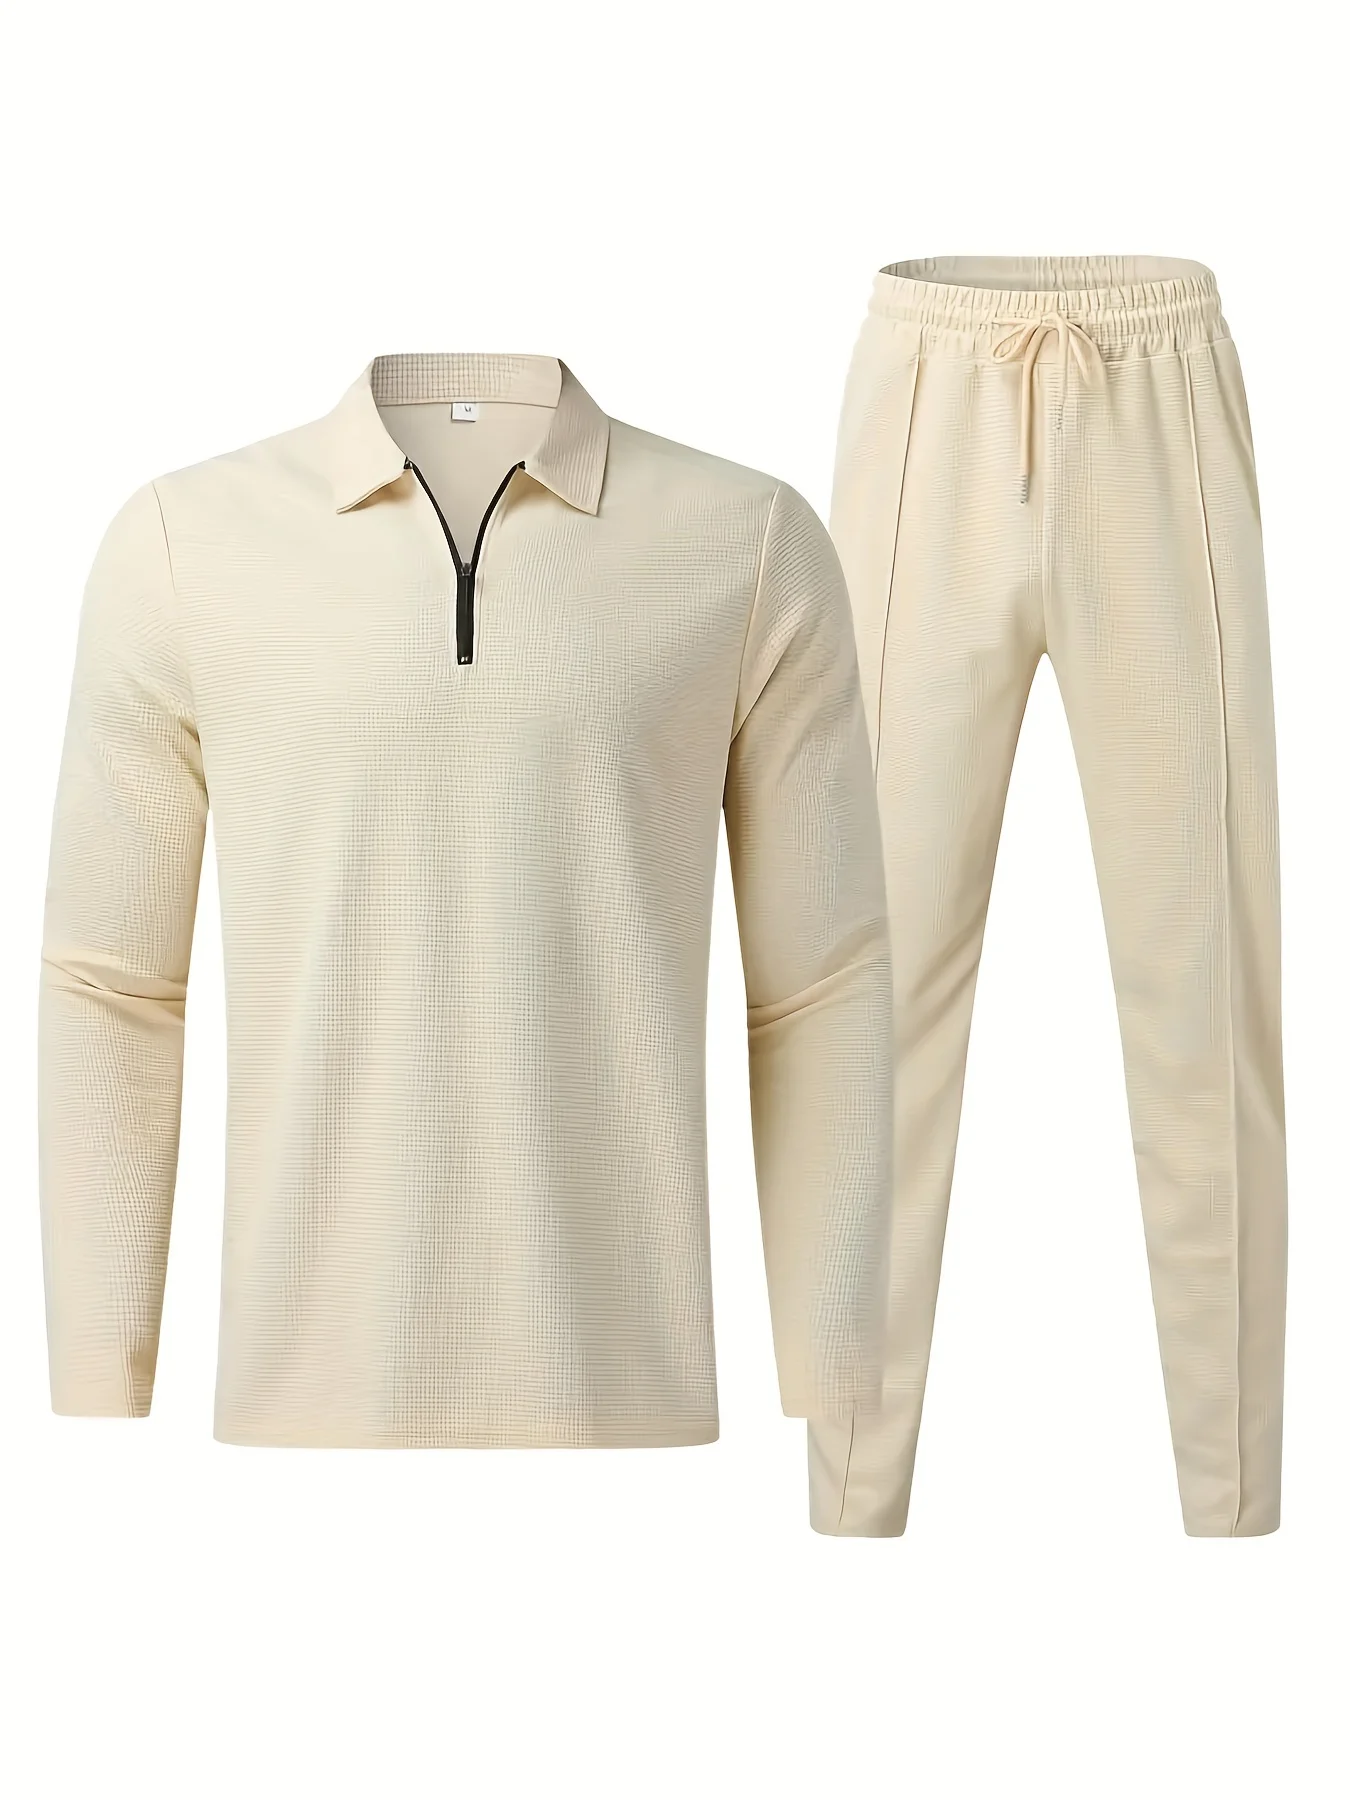 Мужская одежда из 2 предметов с вафельным рисунком, повседневная рубашка с V-образным вырезом, пуловер с длинным рукавом, толстовка и спортивные штаны на завязках, комплект для бега трусцой